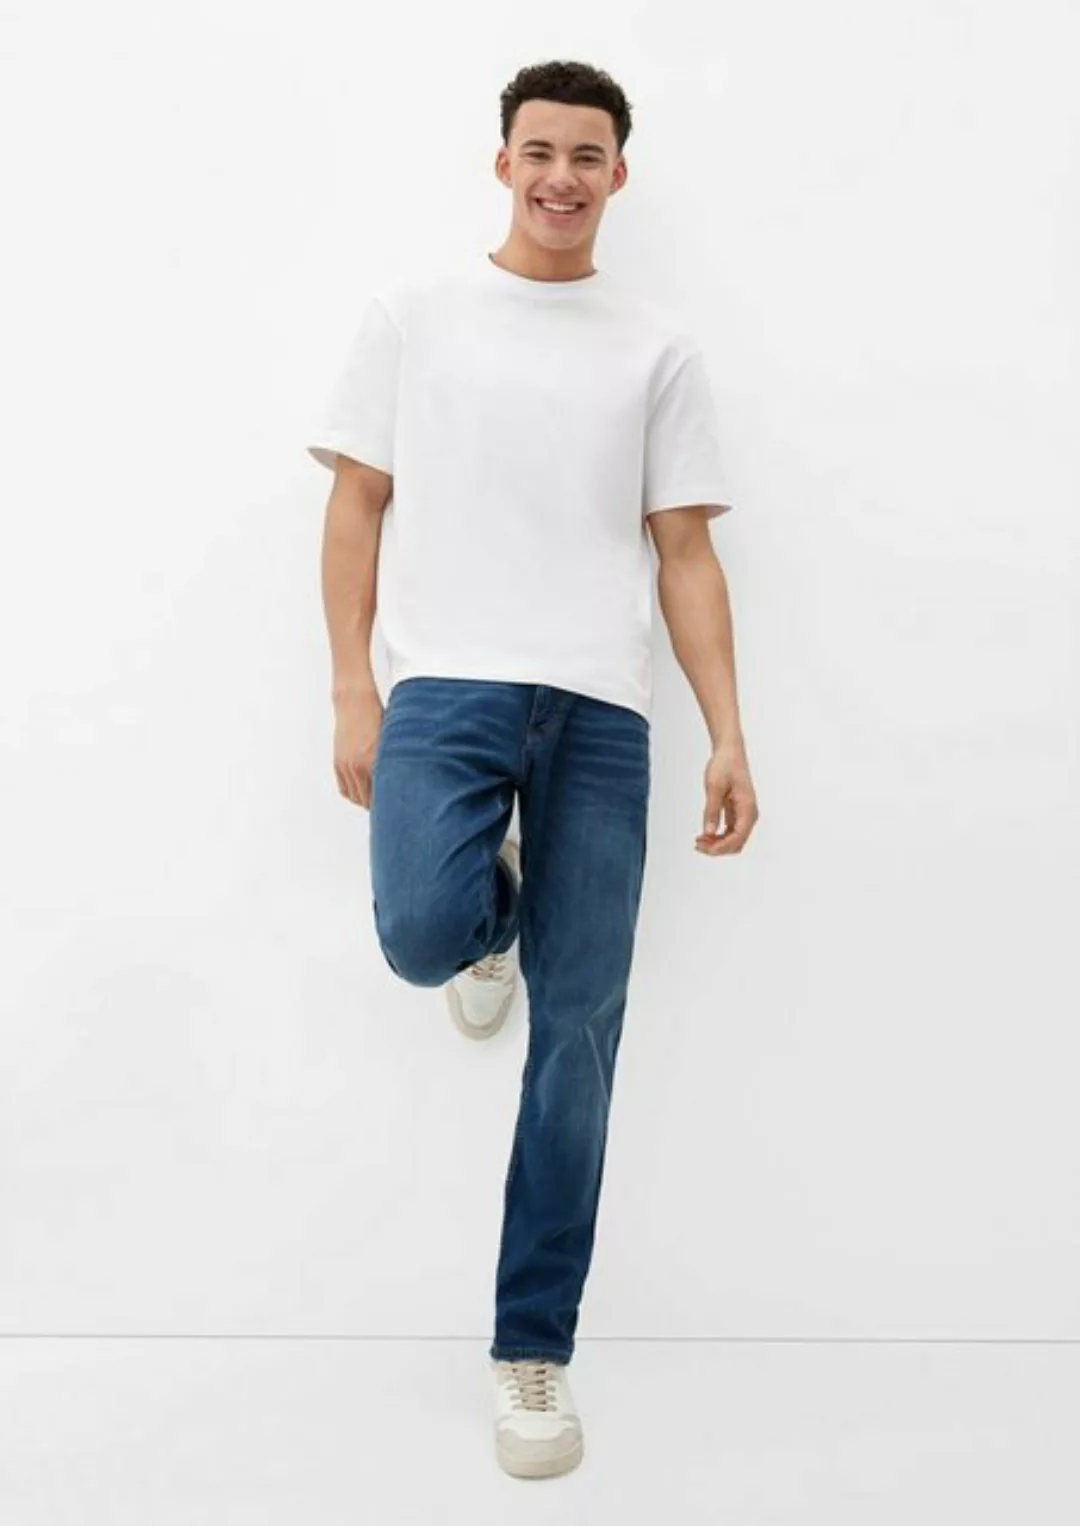 QS Stoffhose Jeans Rick / Slim Fit / Mid Rise / Slim Leg Label-Patch, Wasch günstig online kaufen